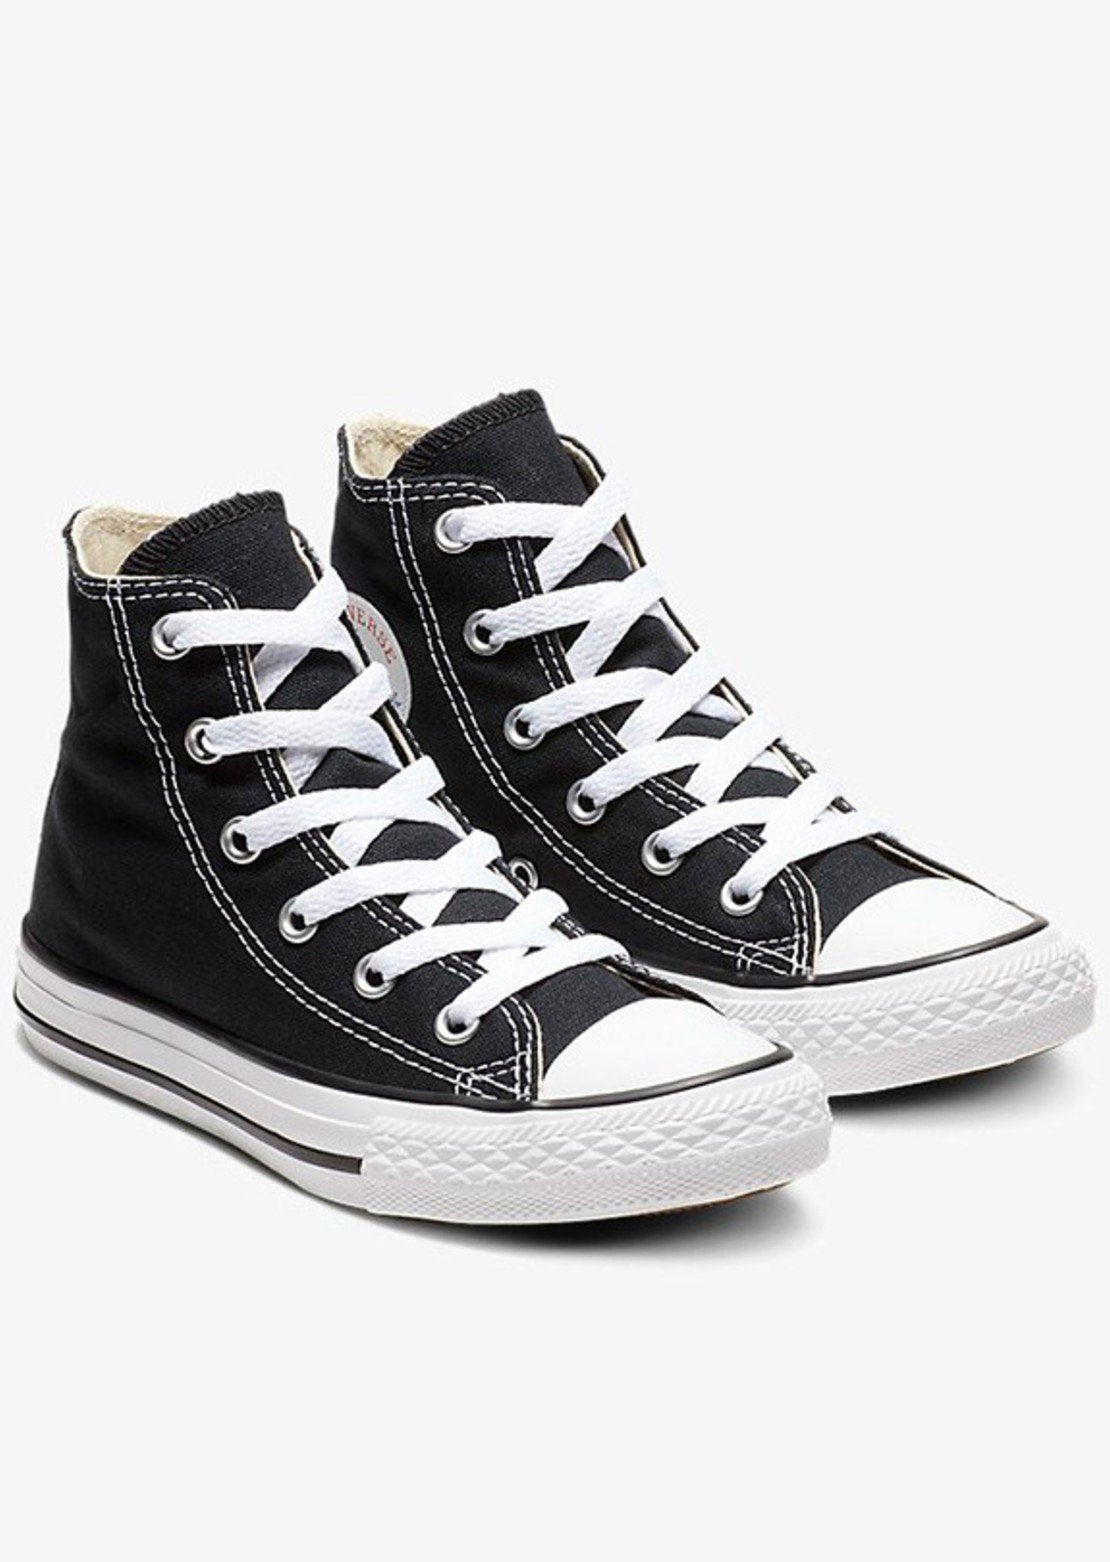 Converse Junior Chuck Taylor All Star HI Shoes Black